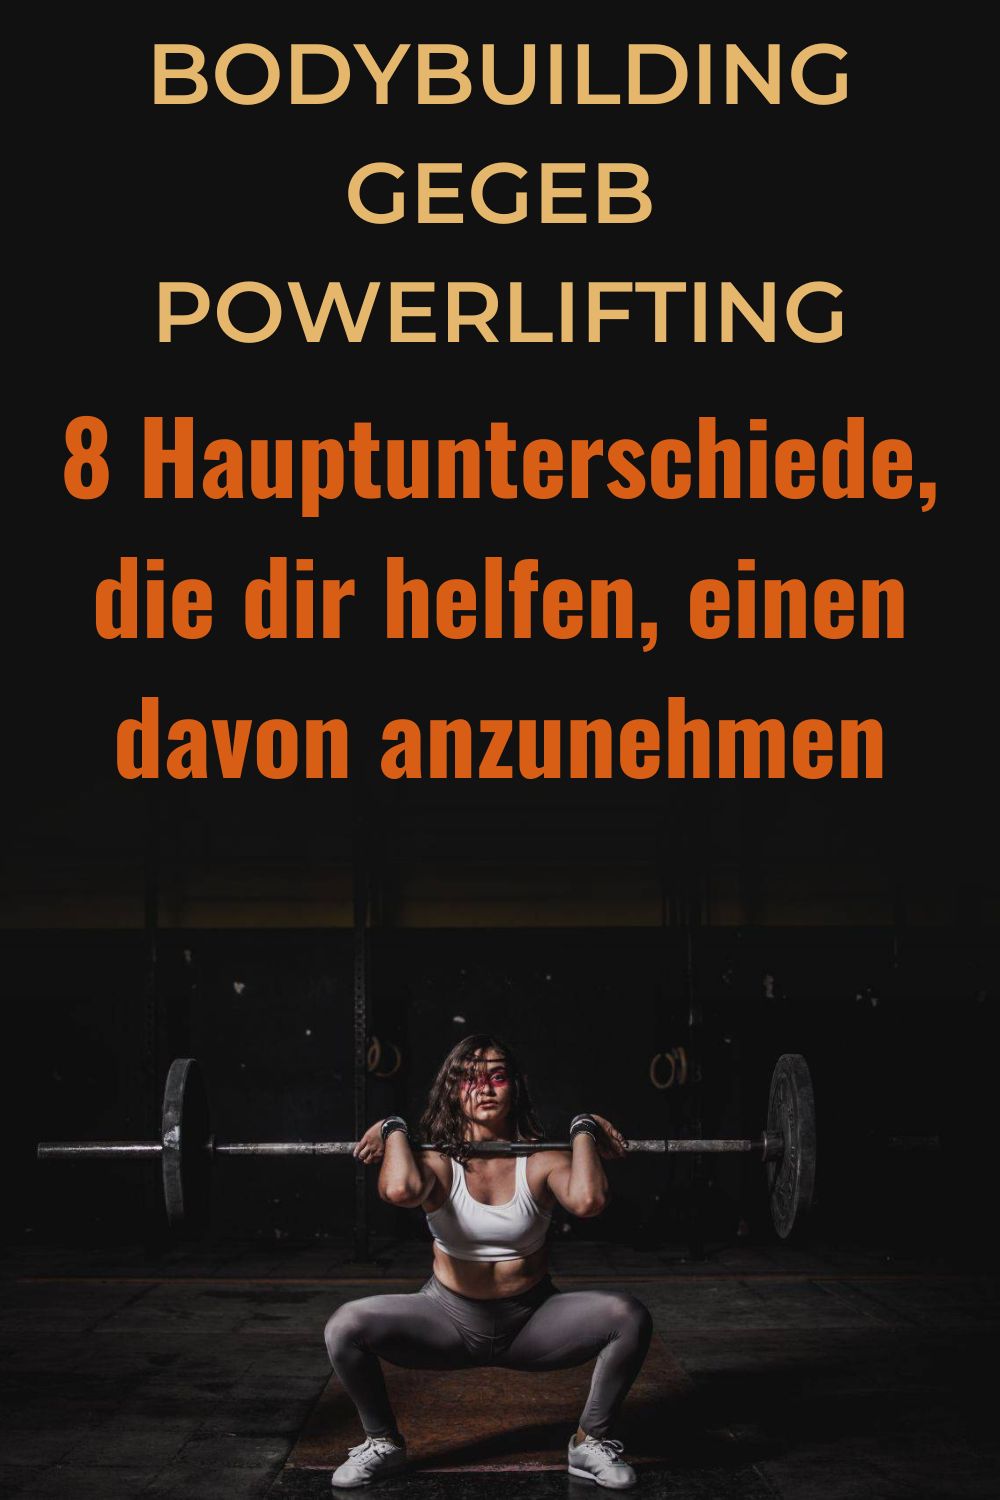 Bodybuilding-gegeb-Powerlifting-8-Hauptunterschiede-die-dir-helfen-einen-davon-anzunehmen